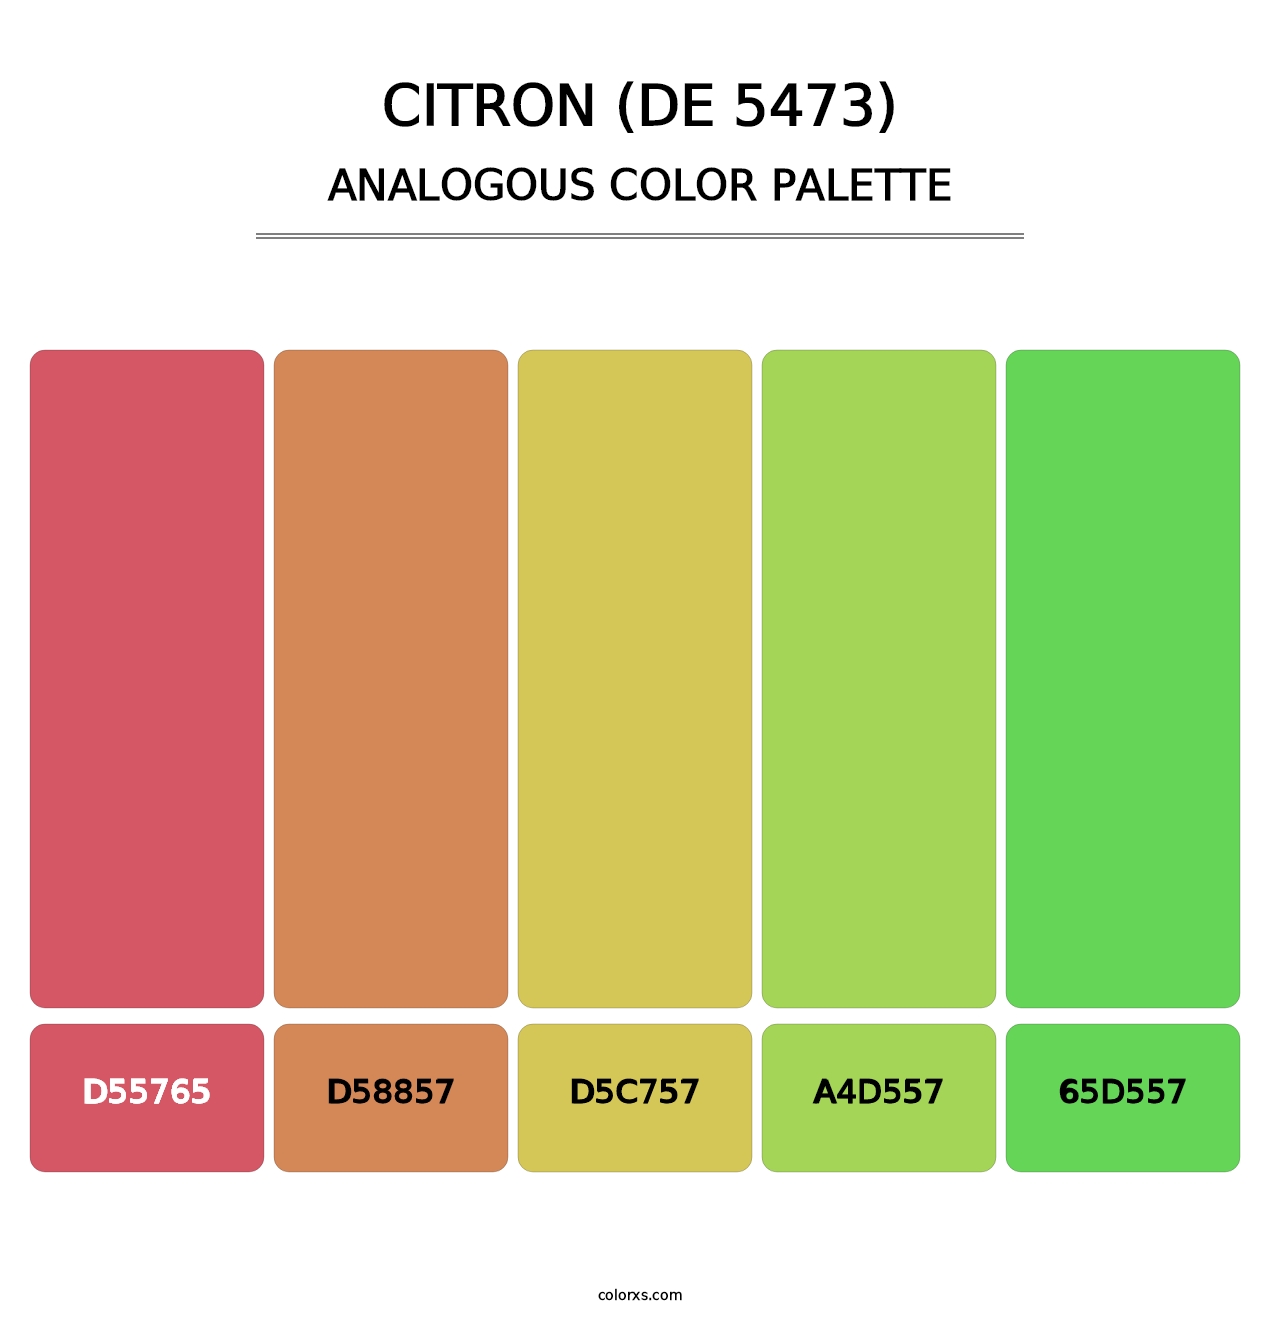 Citron (DE 5473) - Analogous Color Palette